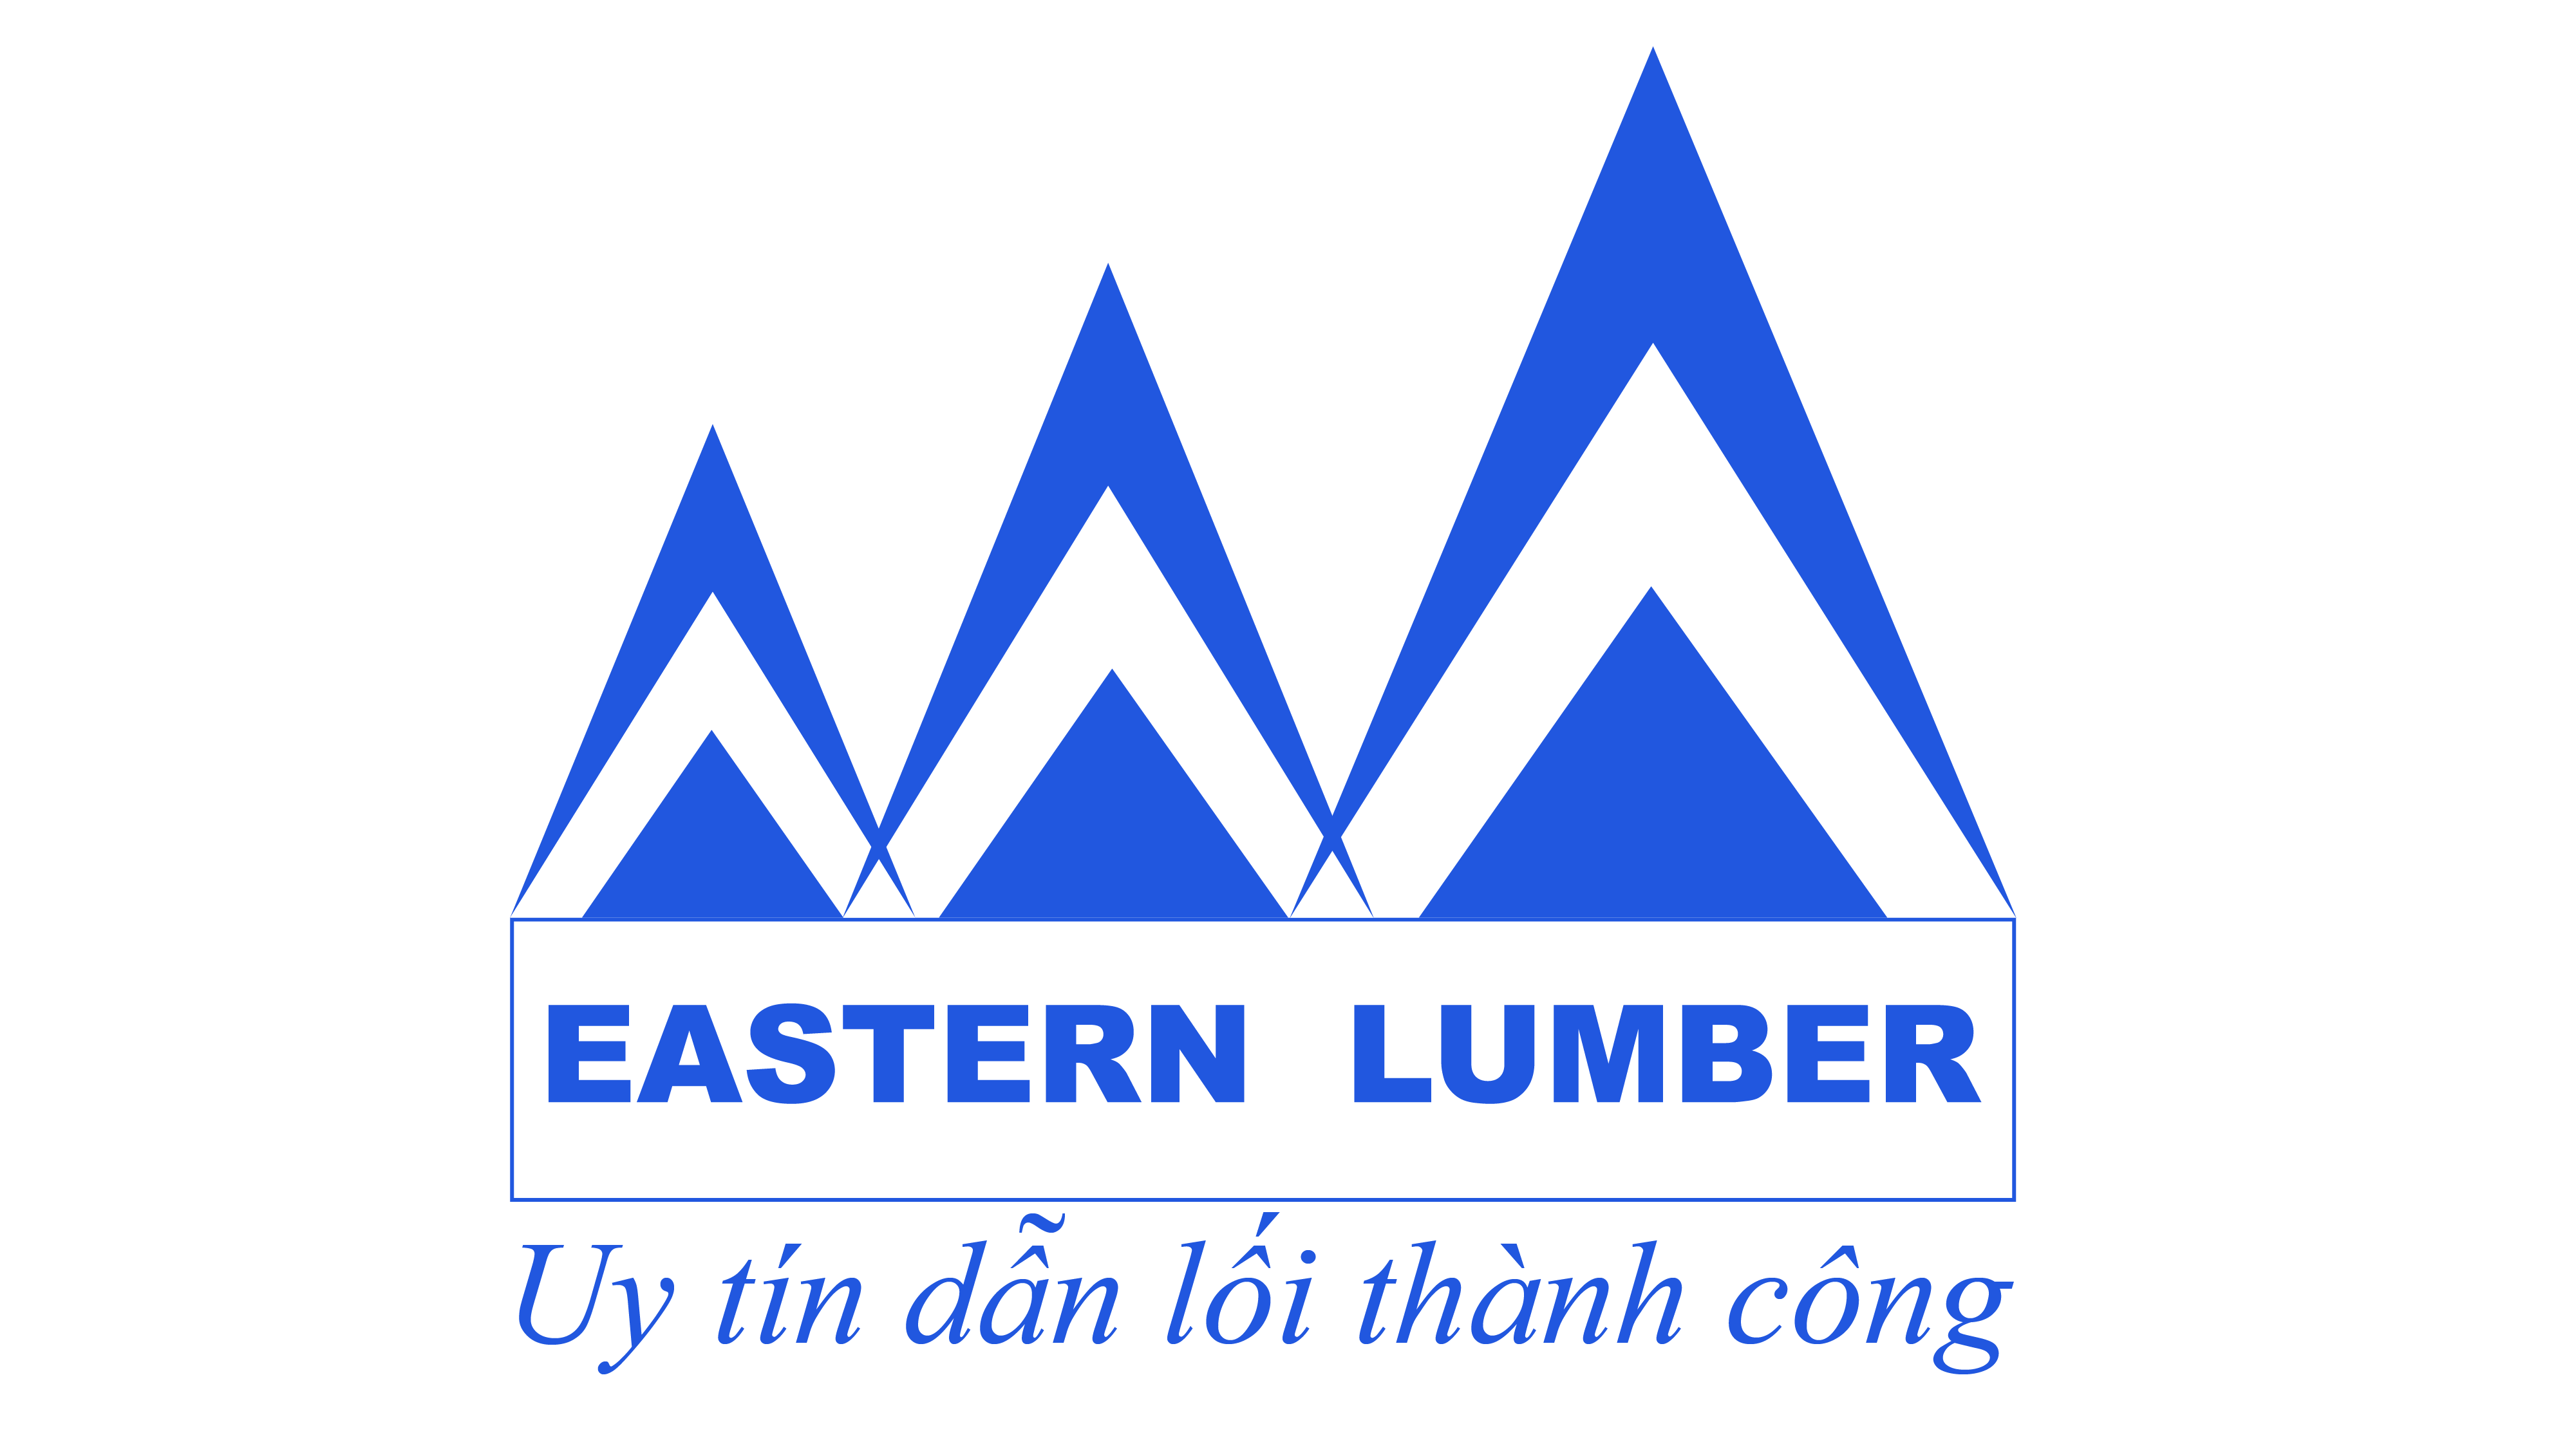 EASTERN LUMBER CO., LTD